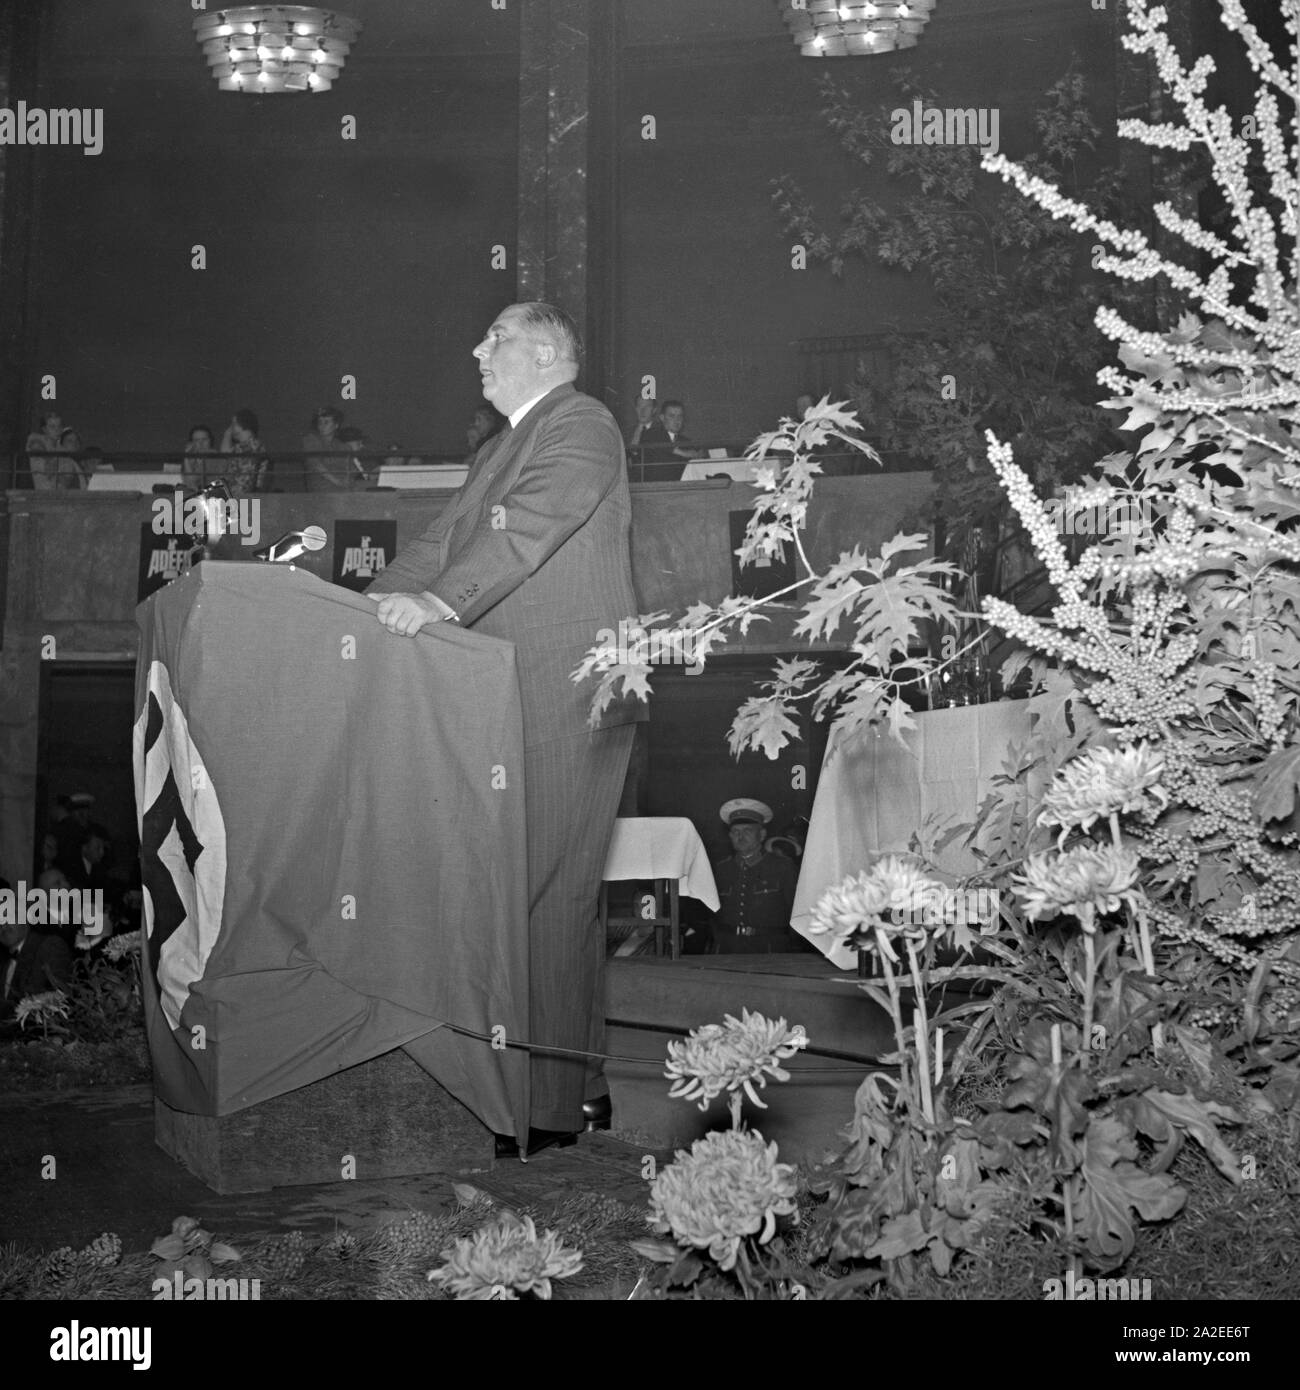 Einer der Mitbegründer der ADEFA, wahrscheinlich Herbert Tengelmann, bei einer Rede anläßlich einer ADEFA Modenschau, Deutschland 1930er Jahre. One of the ADEFA founders, perhaps Herbert Tengelmann, delivering a speech at an ADEFA fashion show, Germany 1930s. Stock Photo